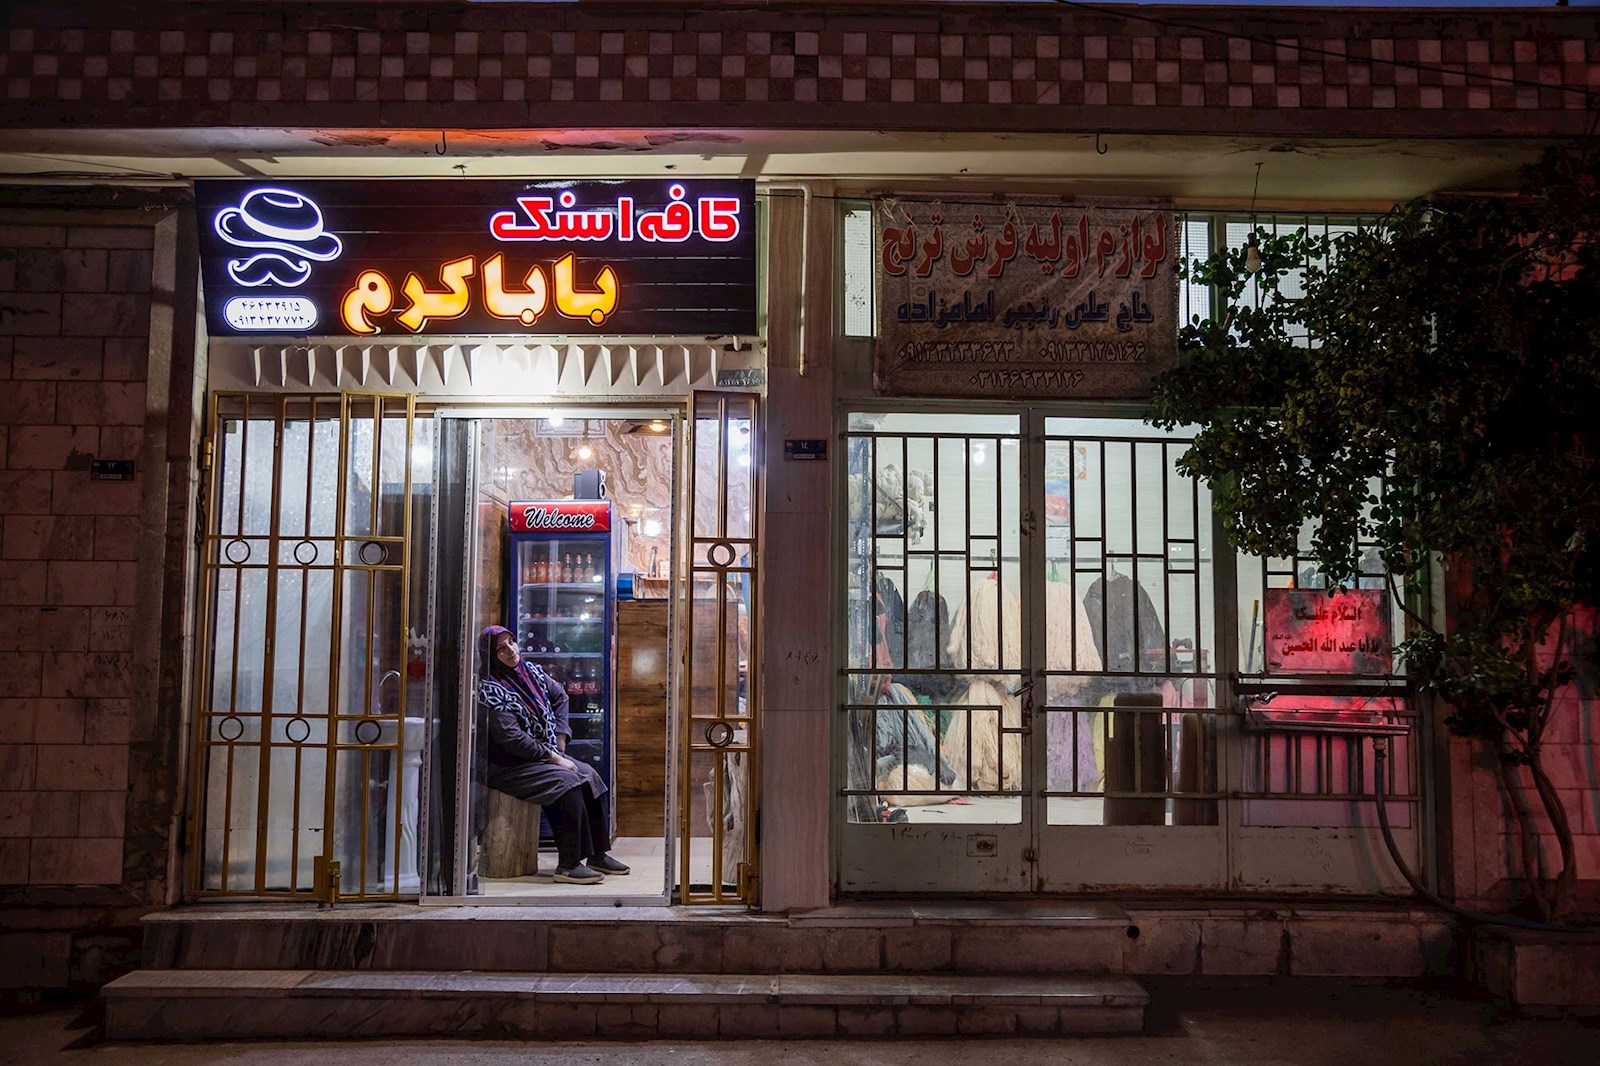 علی پسر خانم رحیمی یک مغازه  کوچک ساندویچی کوچک  دارد.  